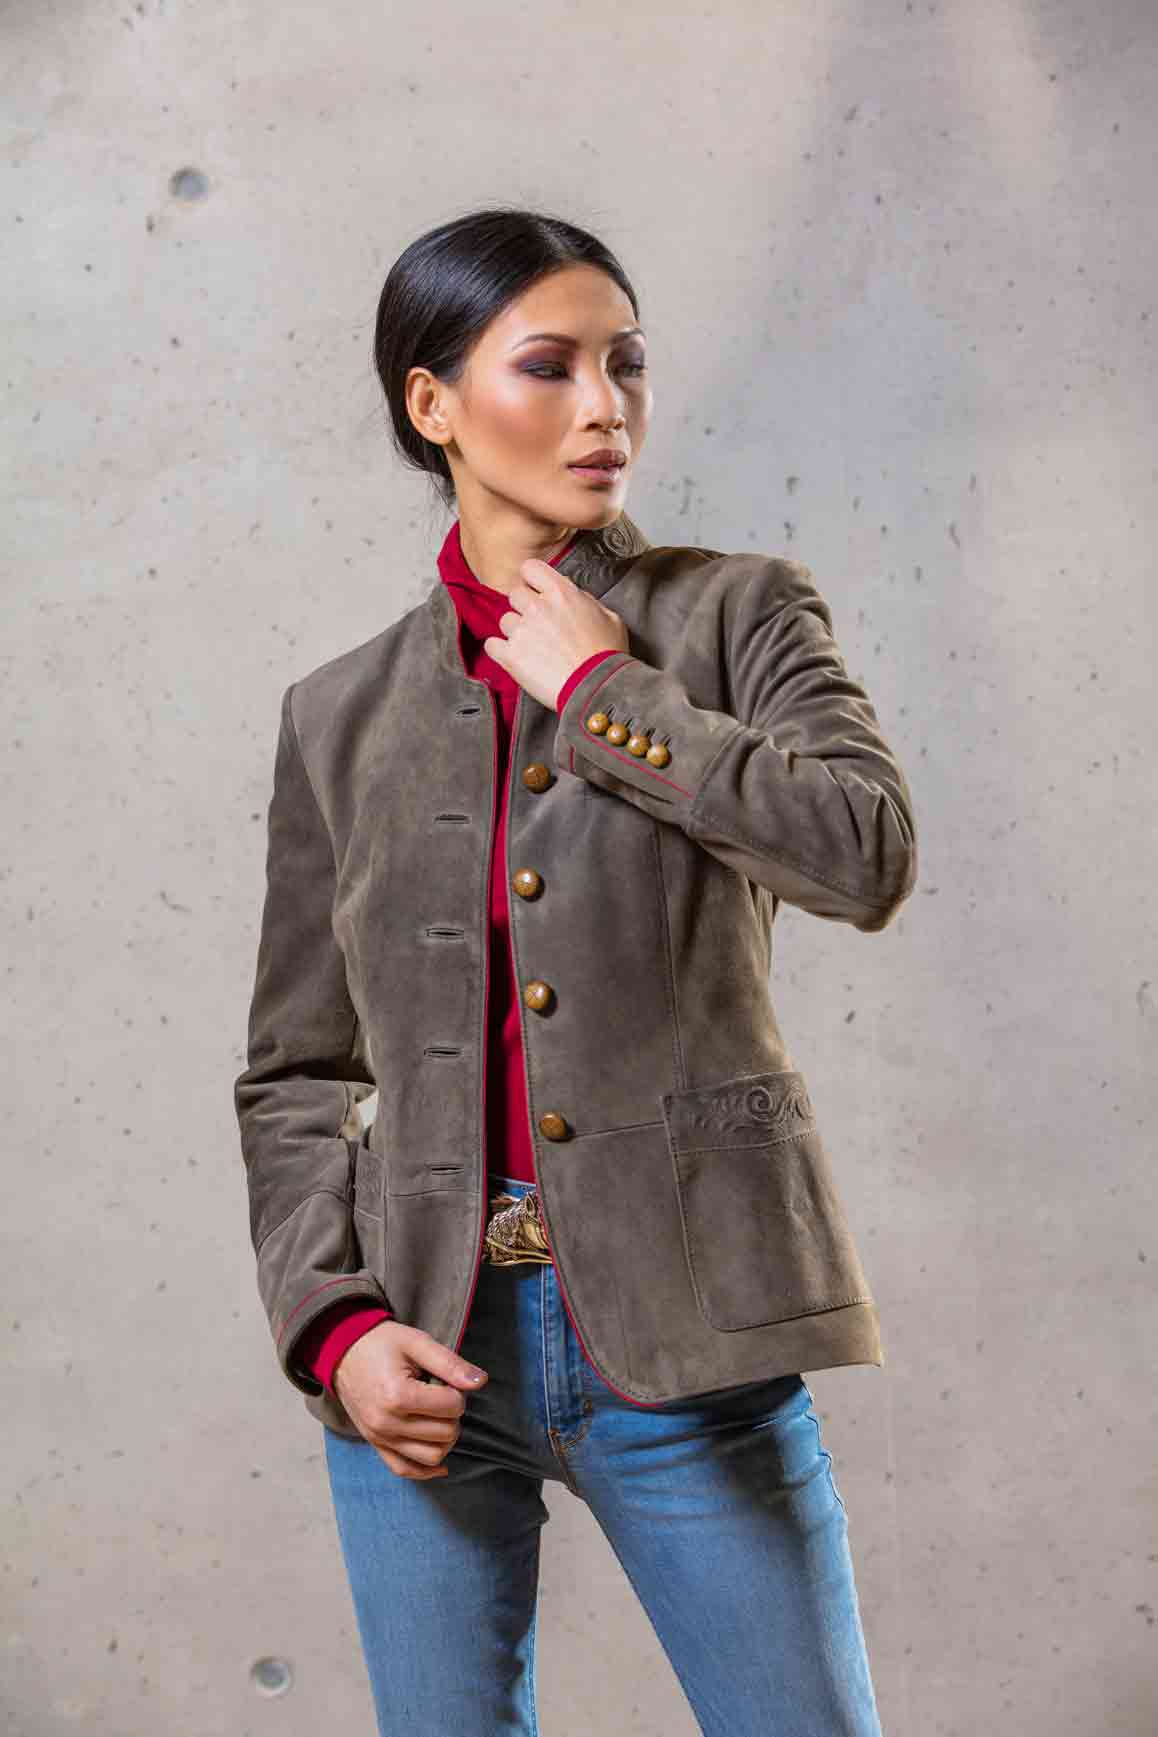 Goat Leather Jacket Women “Zermatt”, darkgrey